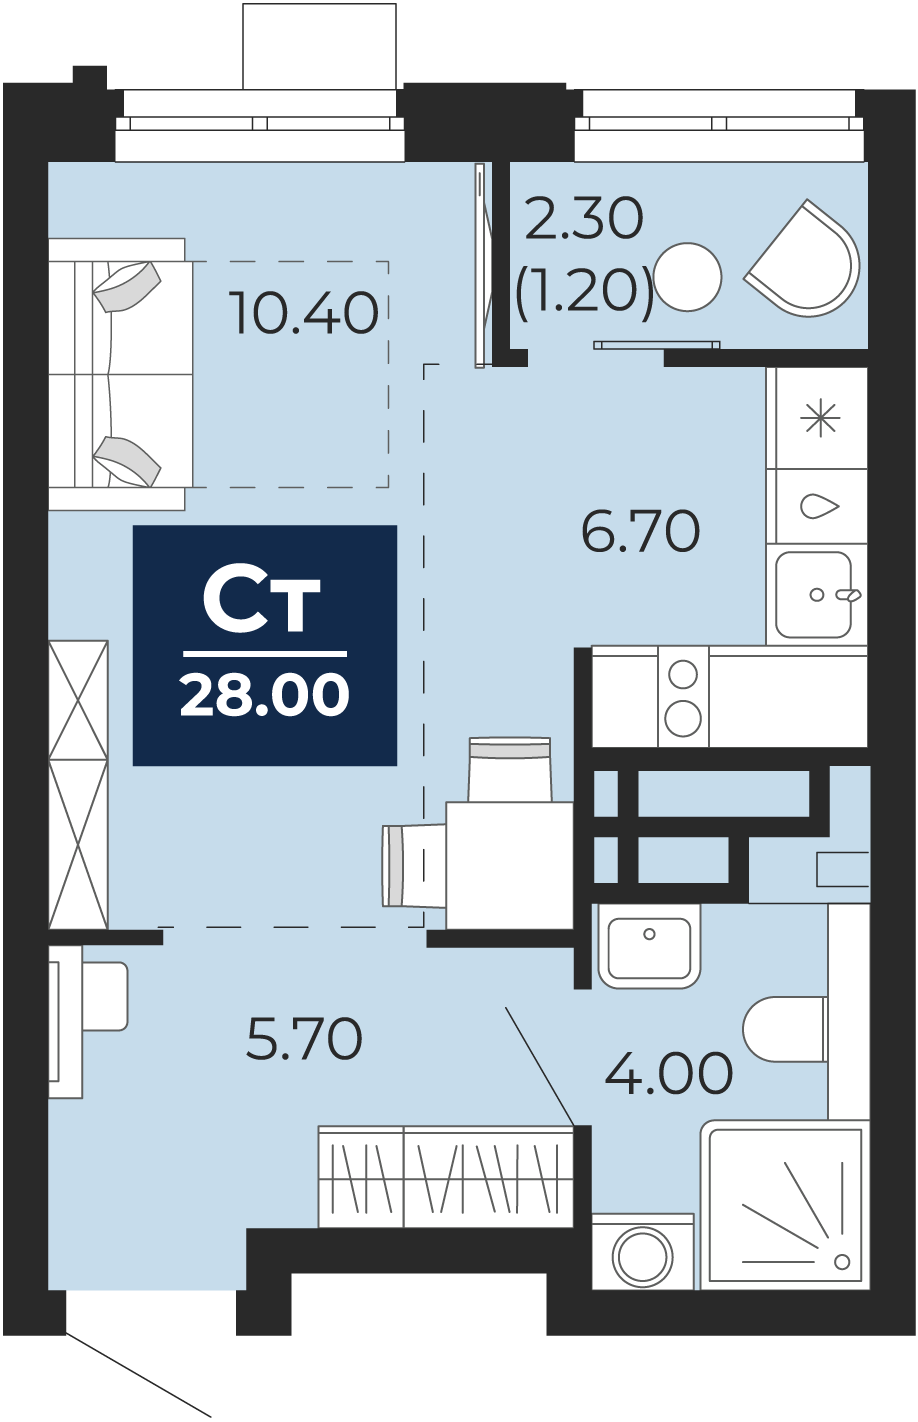 Квартира № 149, Студия, 28 кв. м, 9 этаж